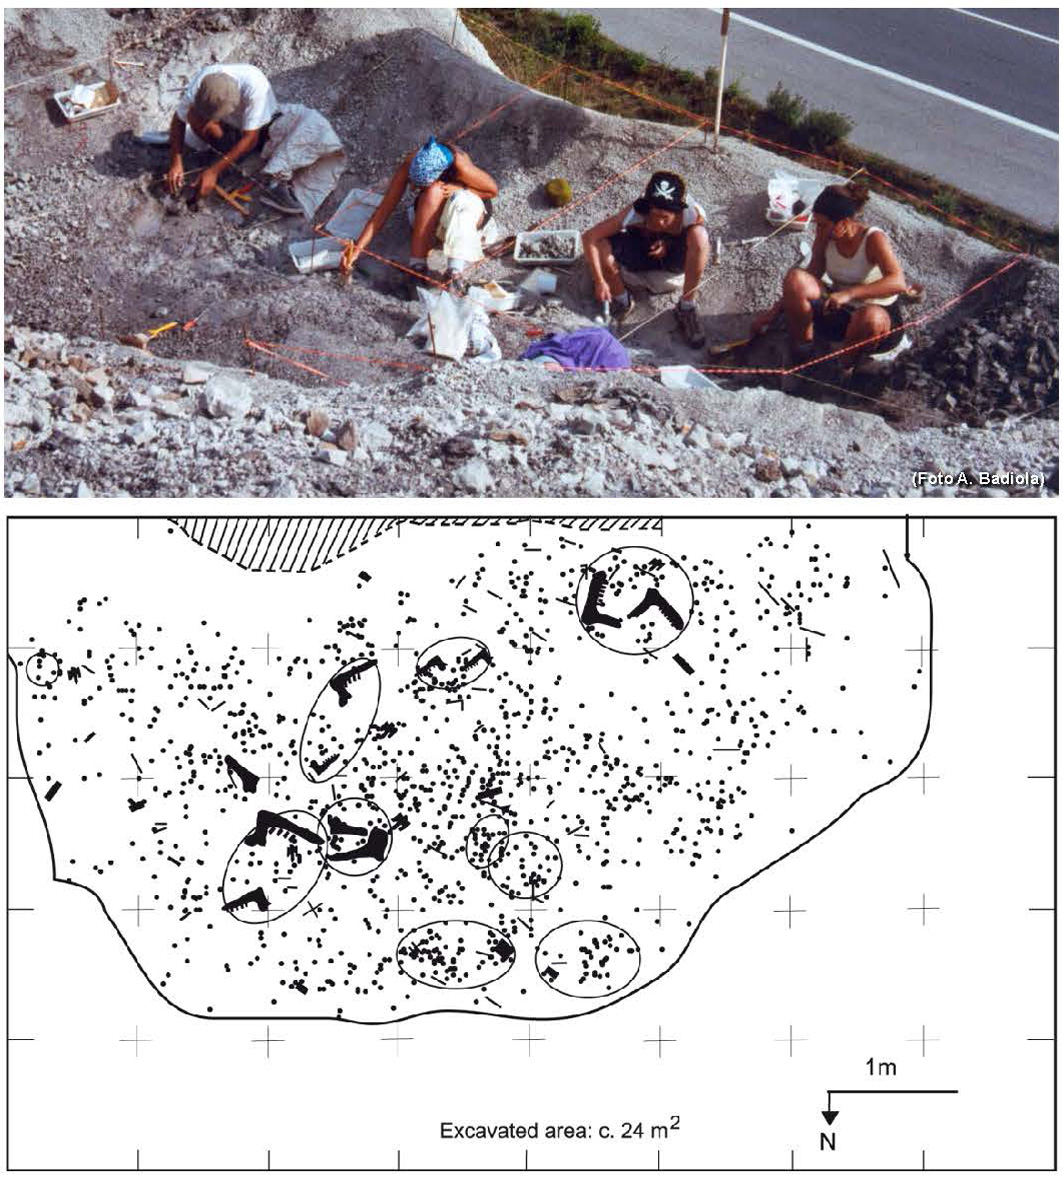 Zanbranan aurkitu duten primate baten aztarna fosilen garrantzia